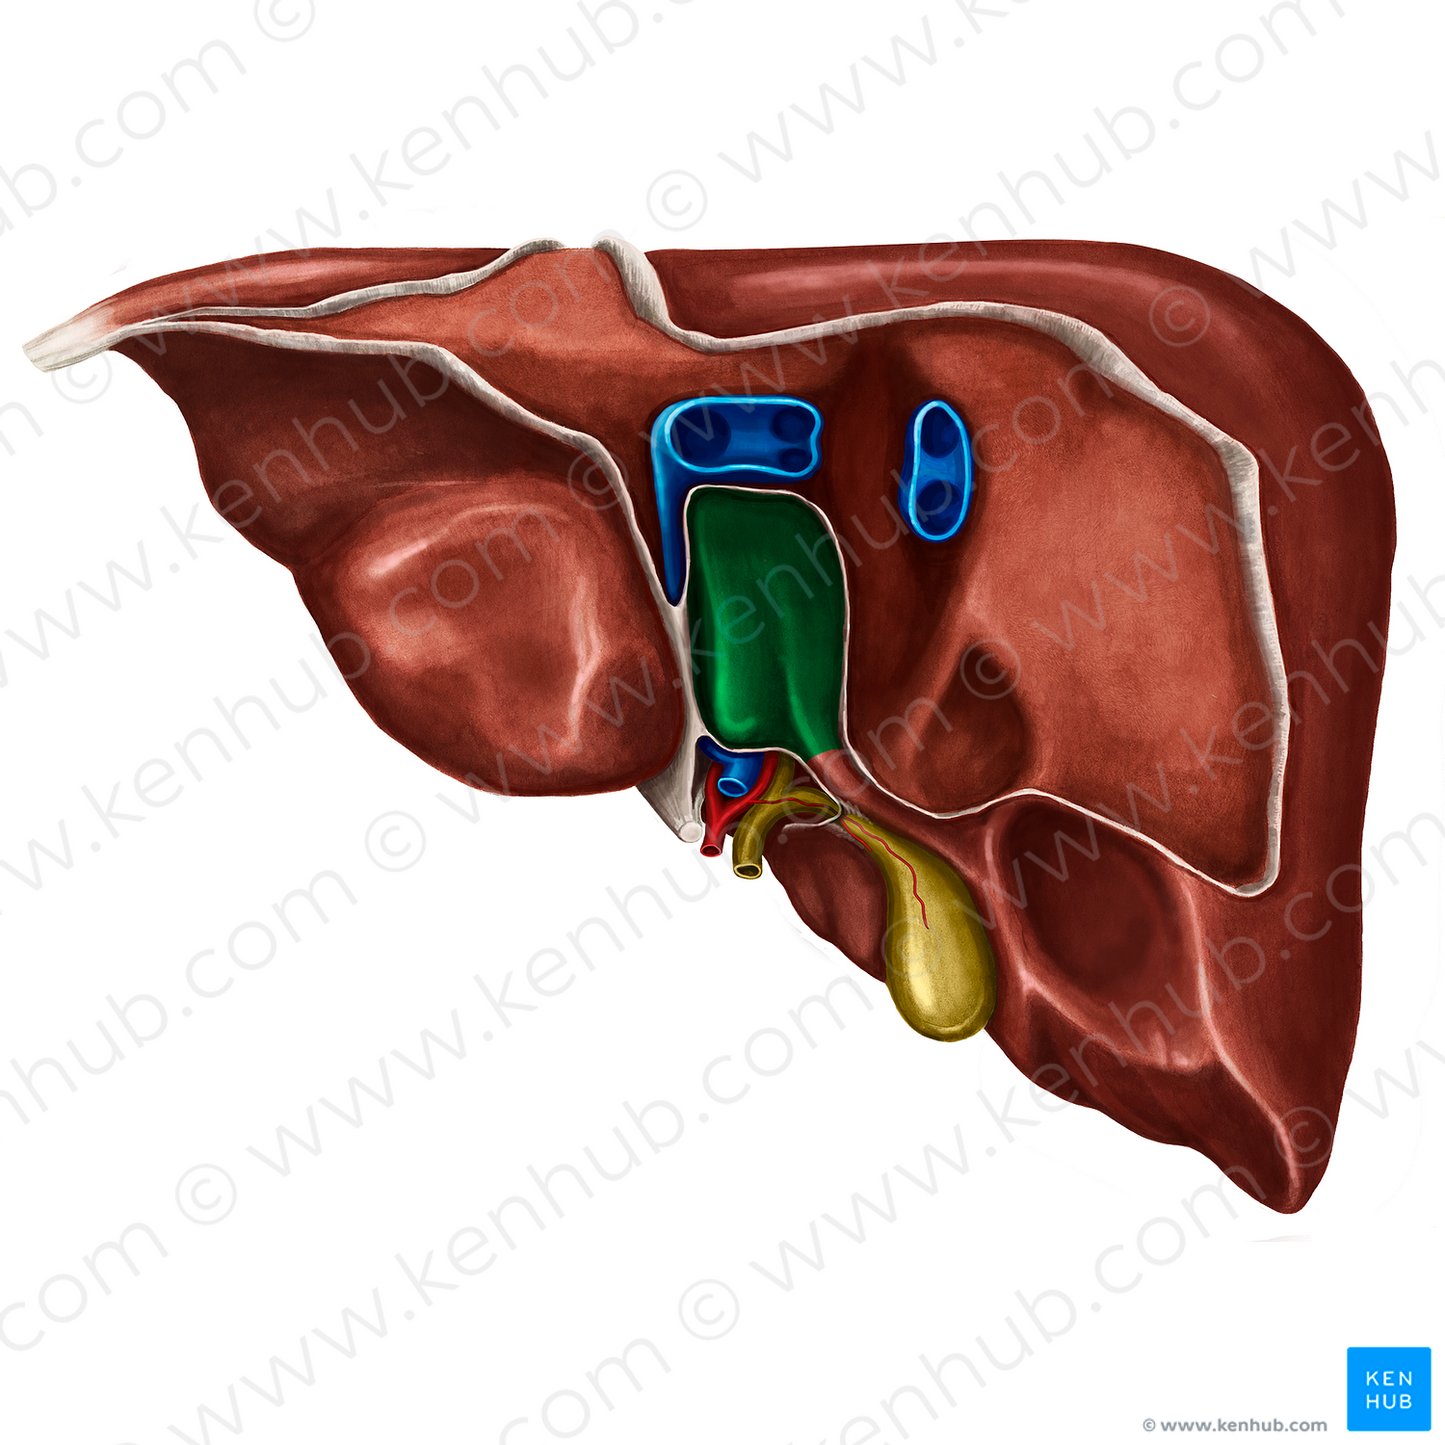 Caudate lobe of liver (#4777)